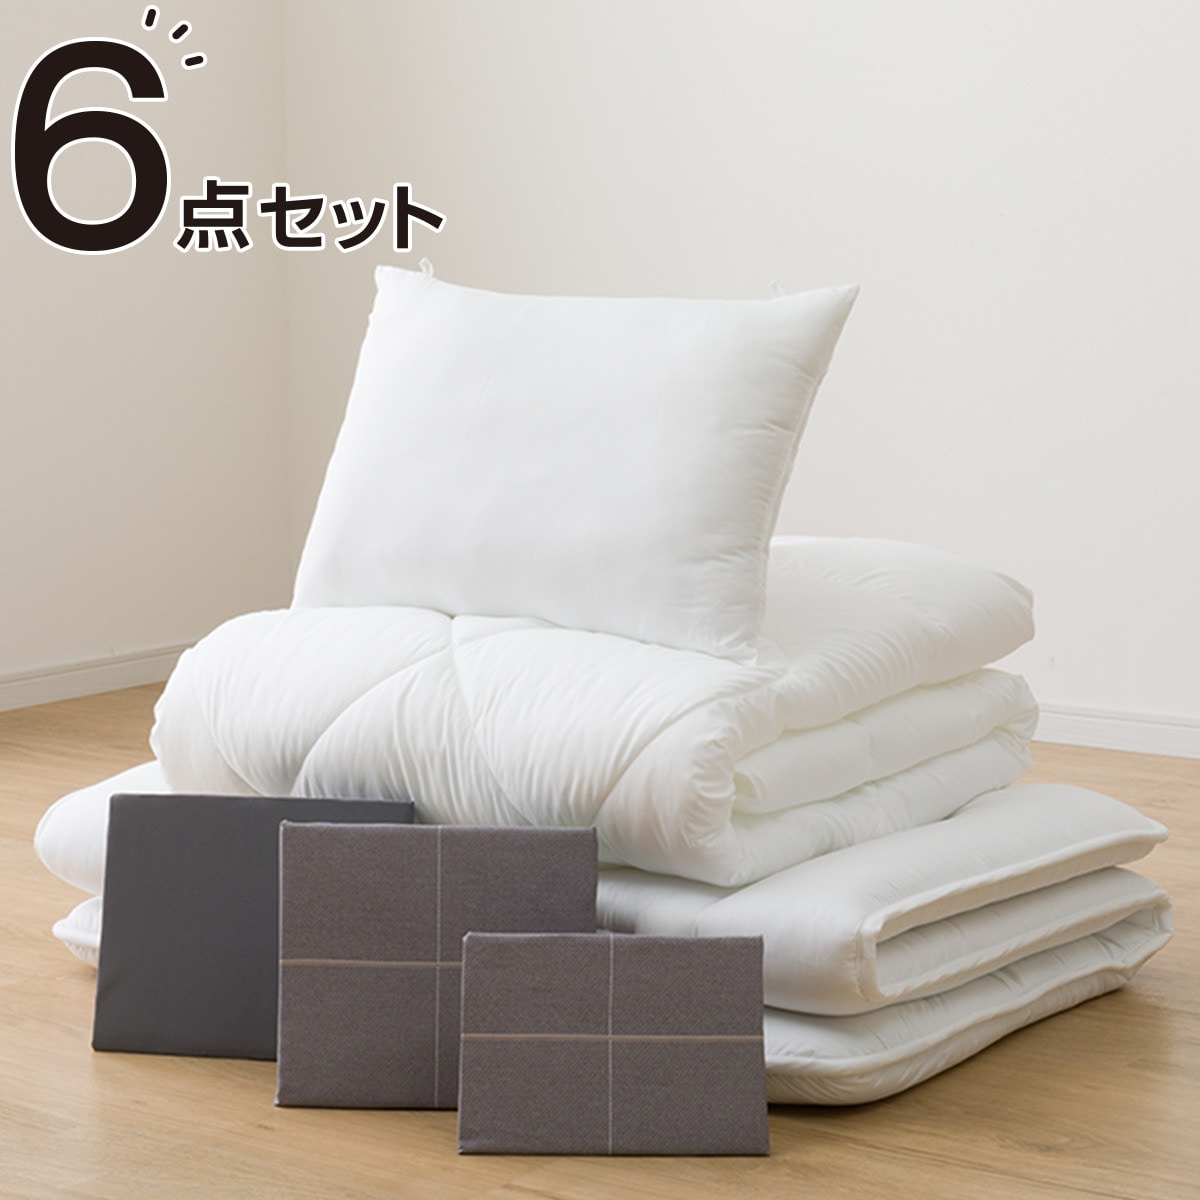 すぐに使える寝具6点セット シングル(WP/GY S2401 S)通販 | ニトリ